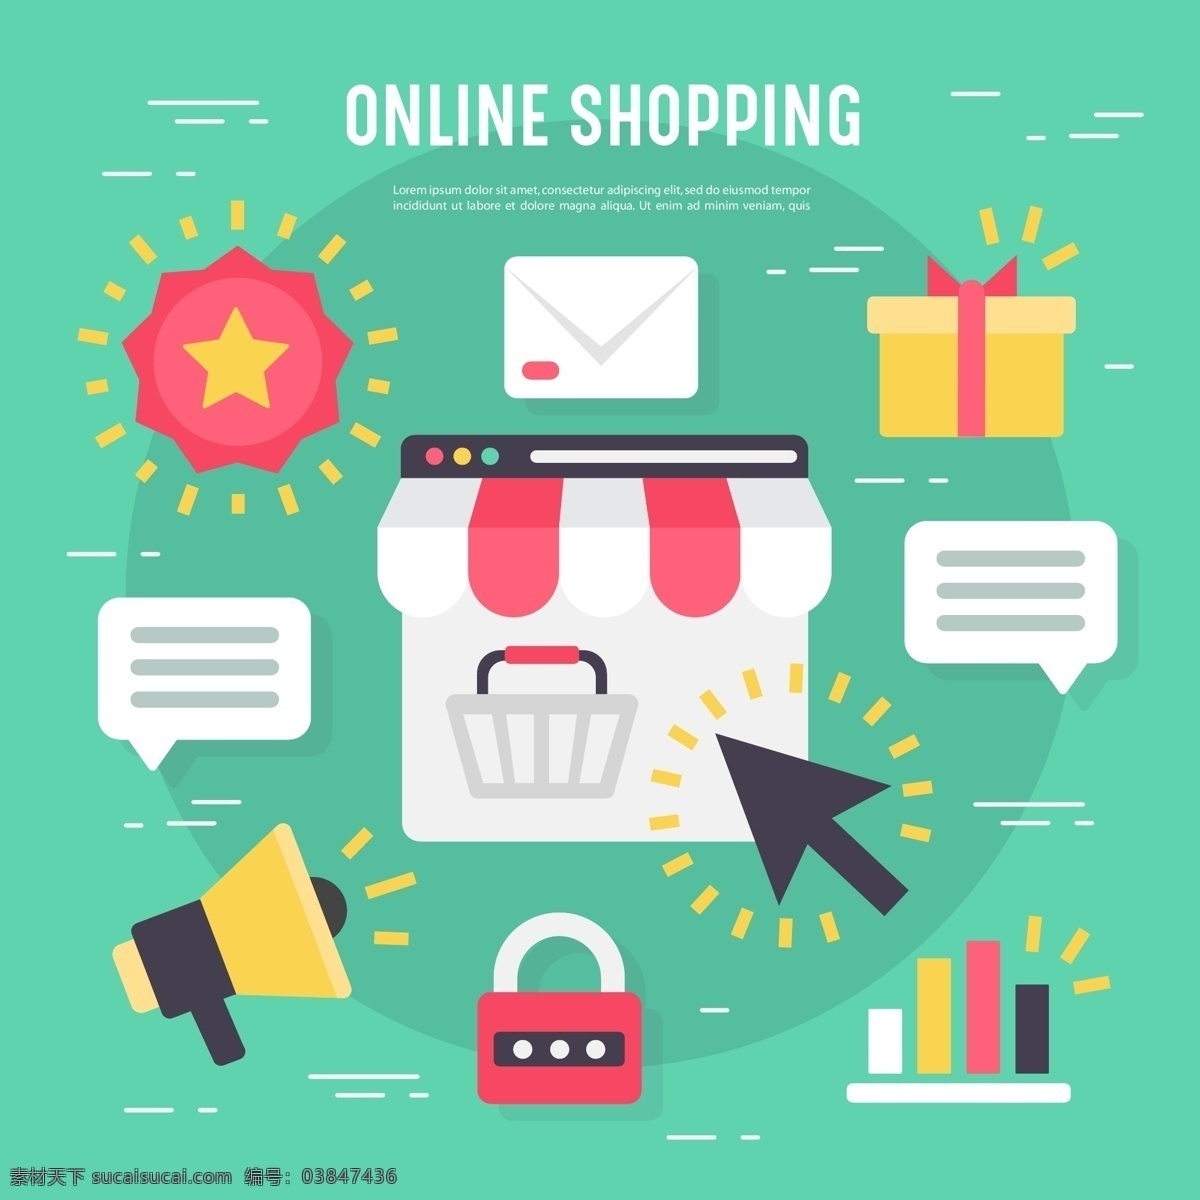 网上购物 商业 矢量 元素 购物元素 购物图标 矢量购物图标 礼物 包包 信息 喇叭